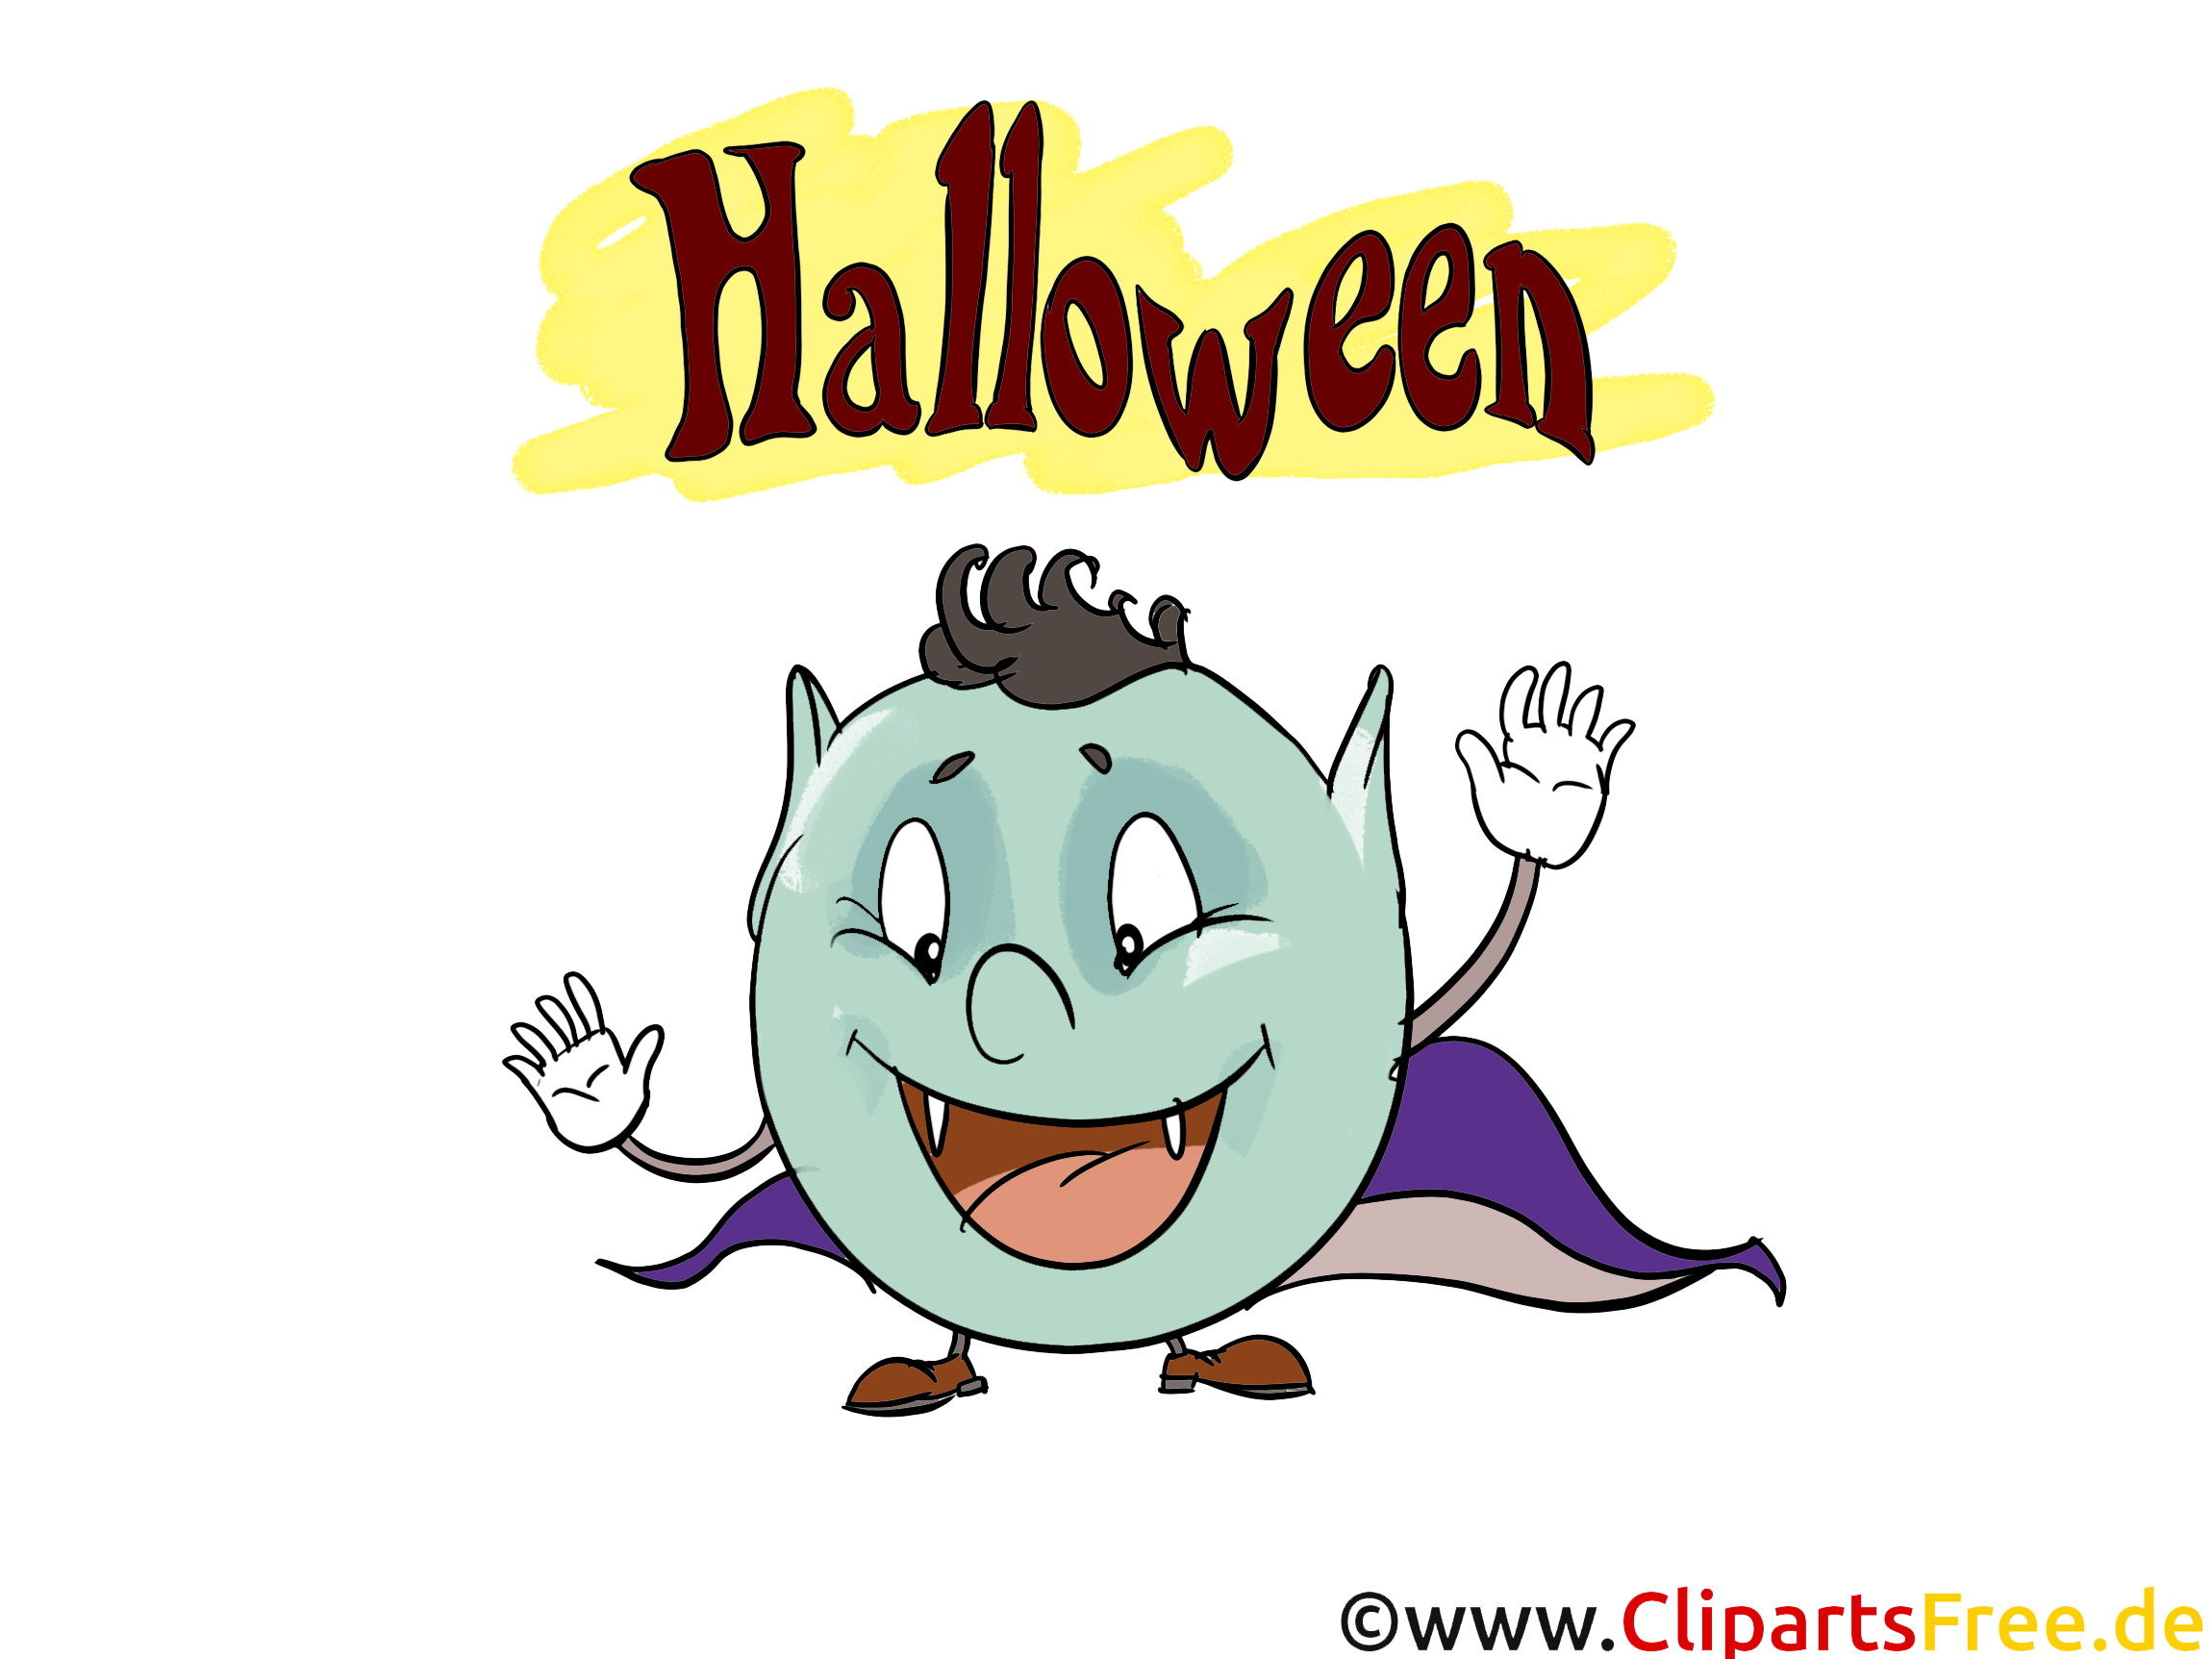 Masque dracula clipart gratuit - Halloween images